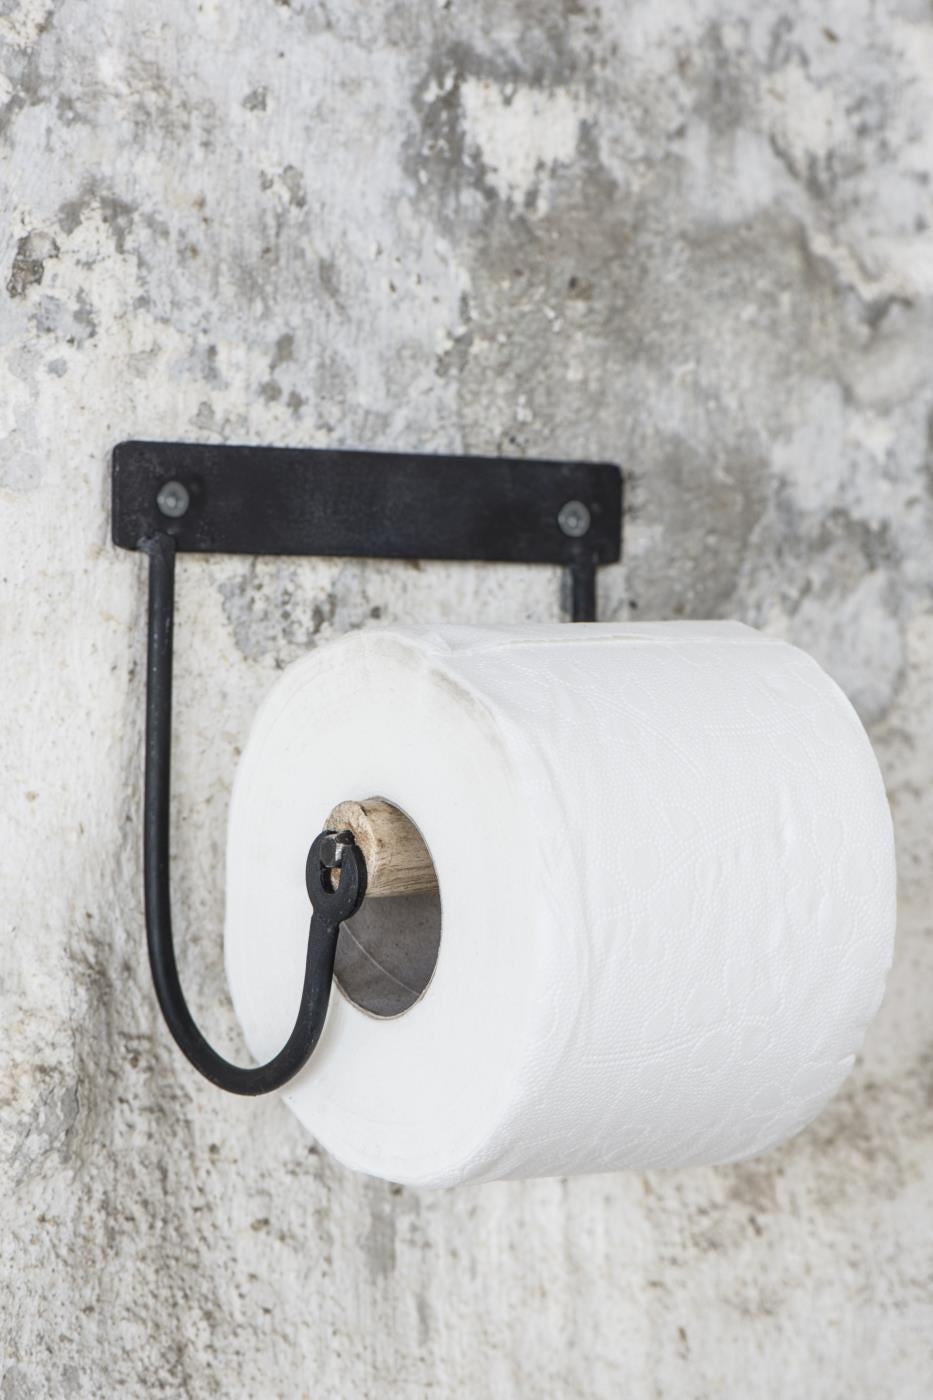 Sort toiletpapirsholder med trærulle